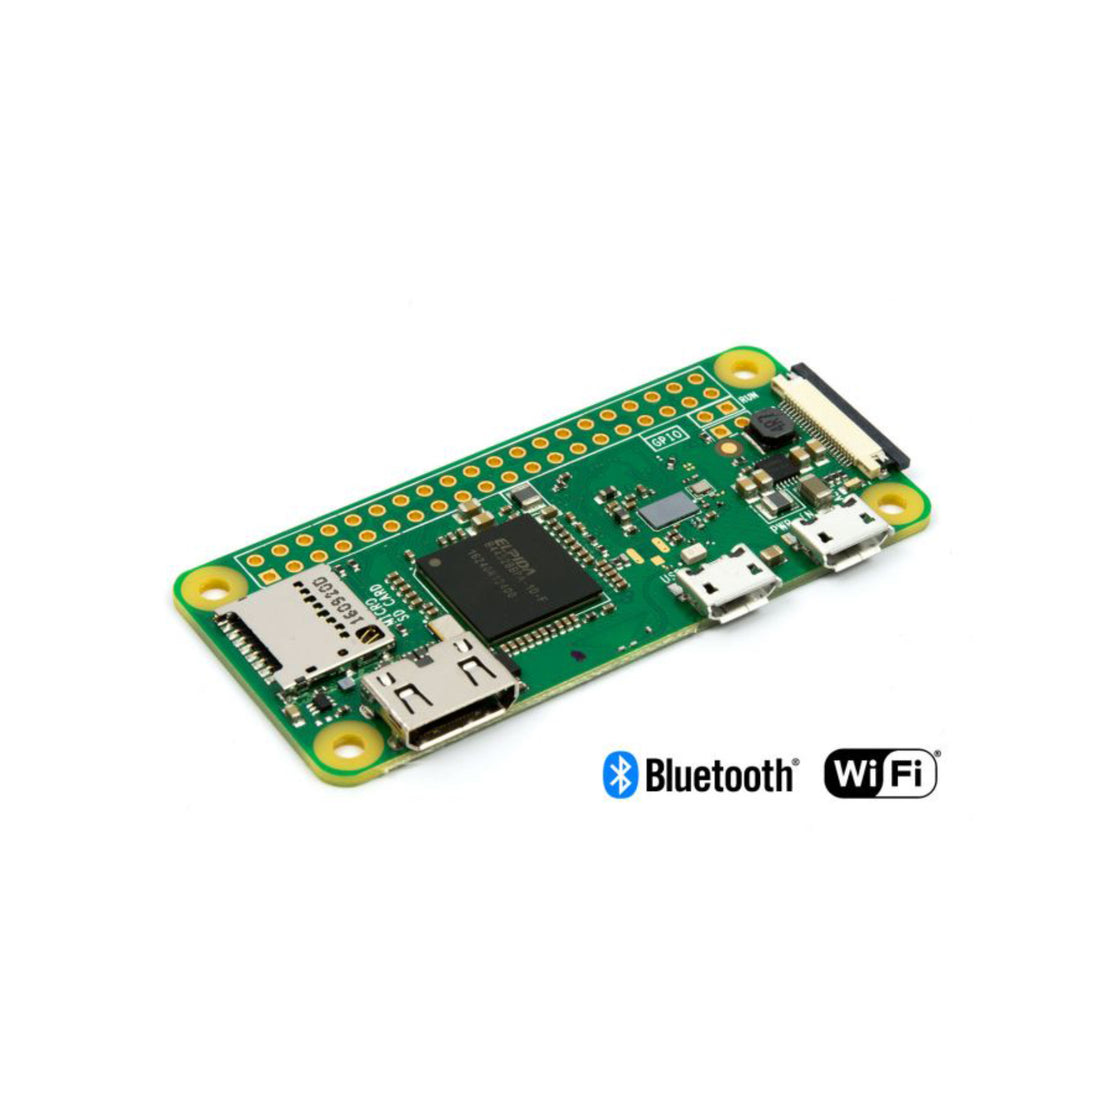 PepperTech Digital Pi Zero W Kit for Raspberry Pi Zero W (Included)